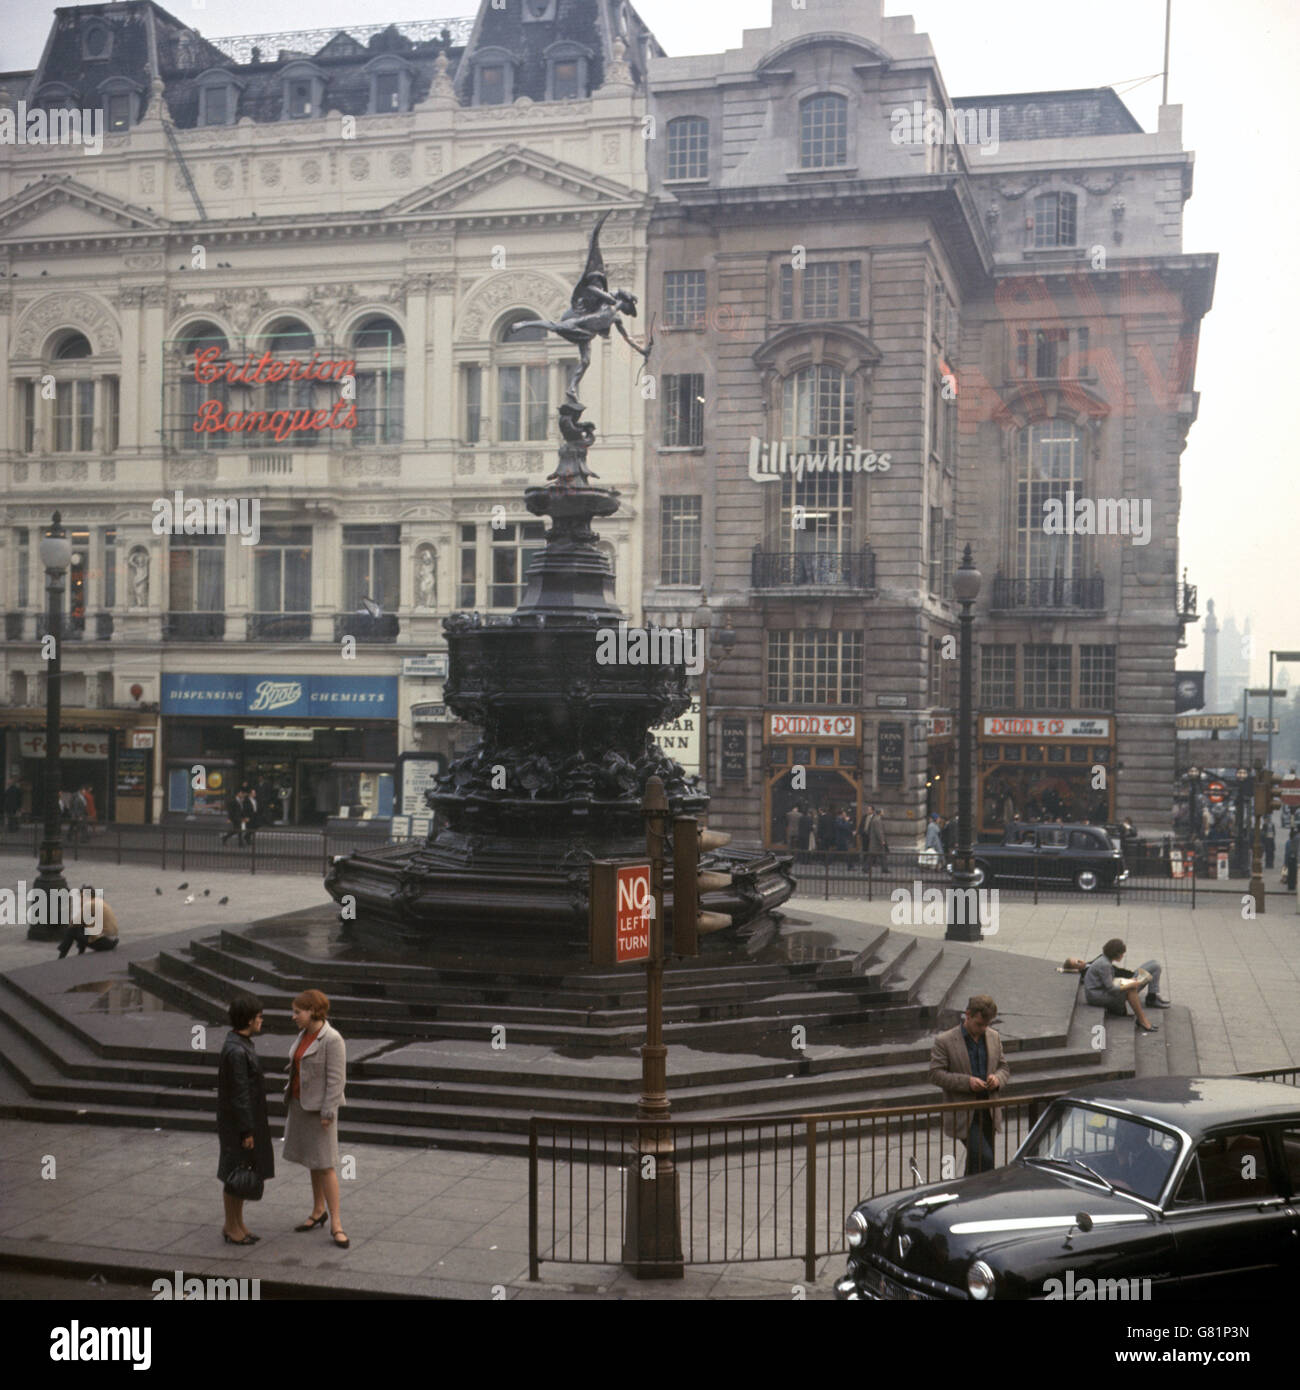 La statua di Eros in Piccadilly Circus. La fontana fu eretta nel 1892 come monumento commemorativo per commemorare Lord Shaftesbury. La statuetta in cima è in realtà Anteros, fratello gemello di Eros. Foto Stock